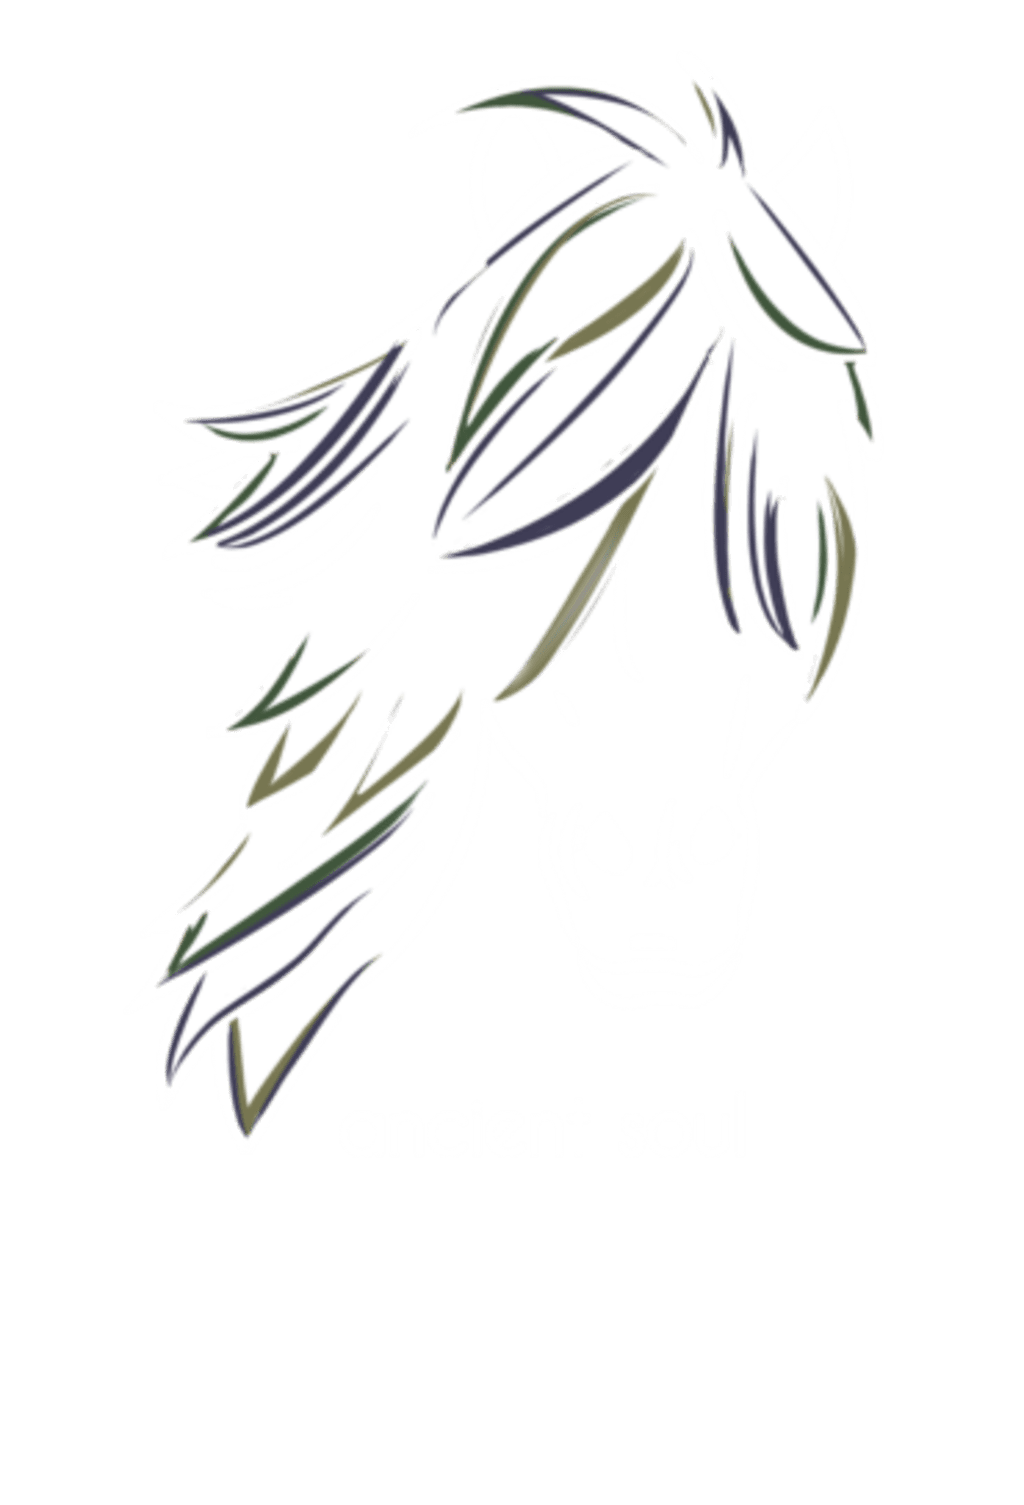 Ancient soul